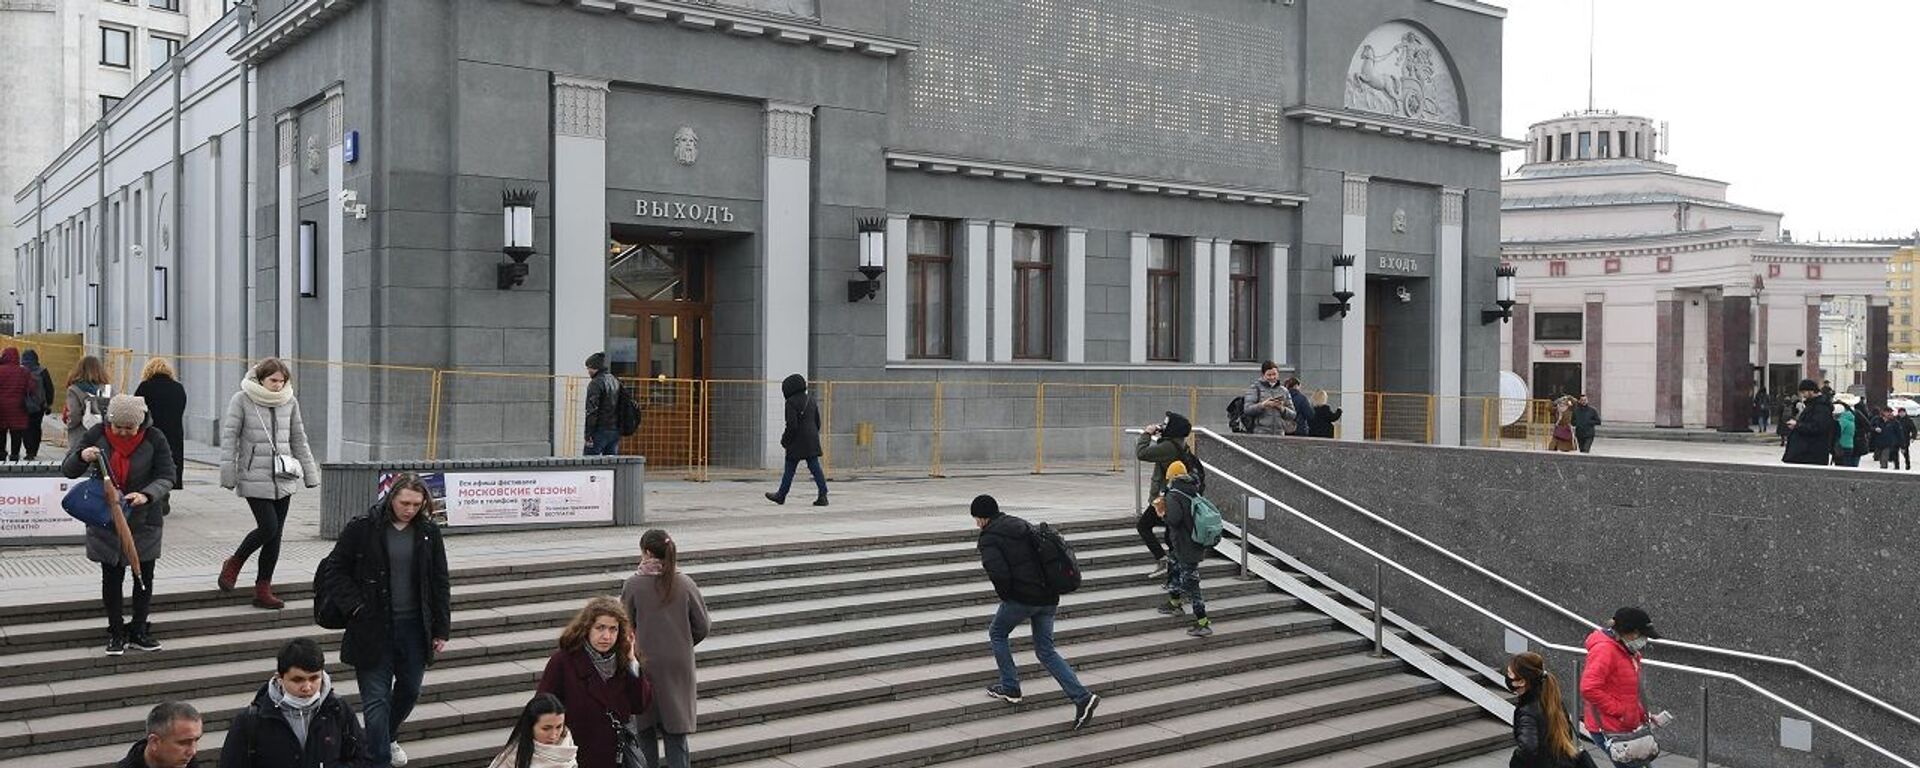 سينما خودوزيسفيني بعد ترميمها وهي أقدم سينما في موسكو تأسست في عام 1909، روسيا - سبوتنيك عربي, 1920, 03.04.2021